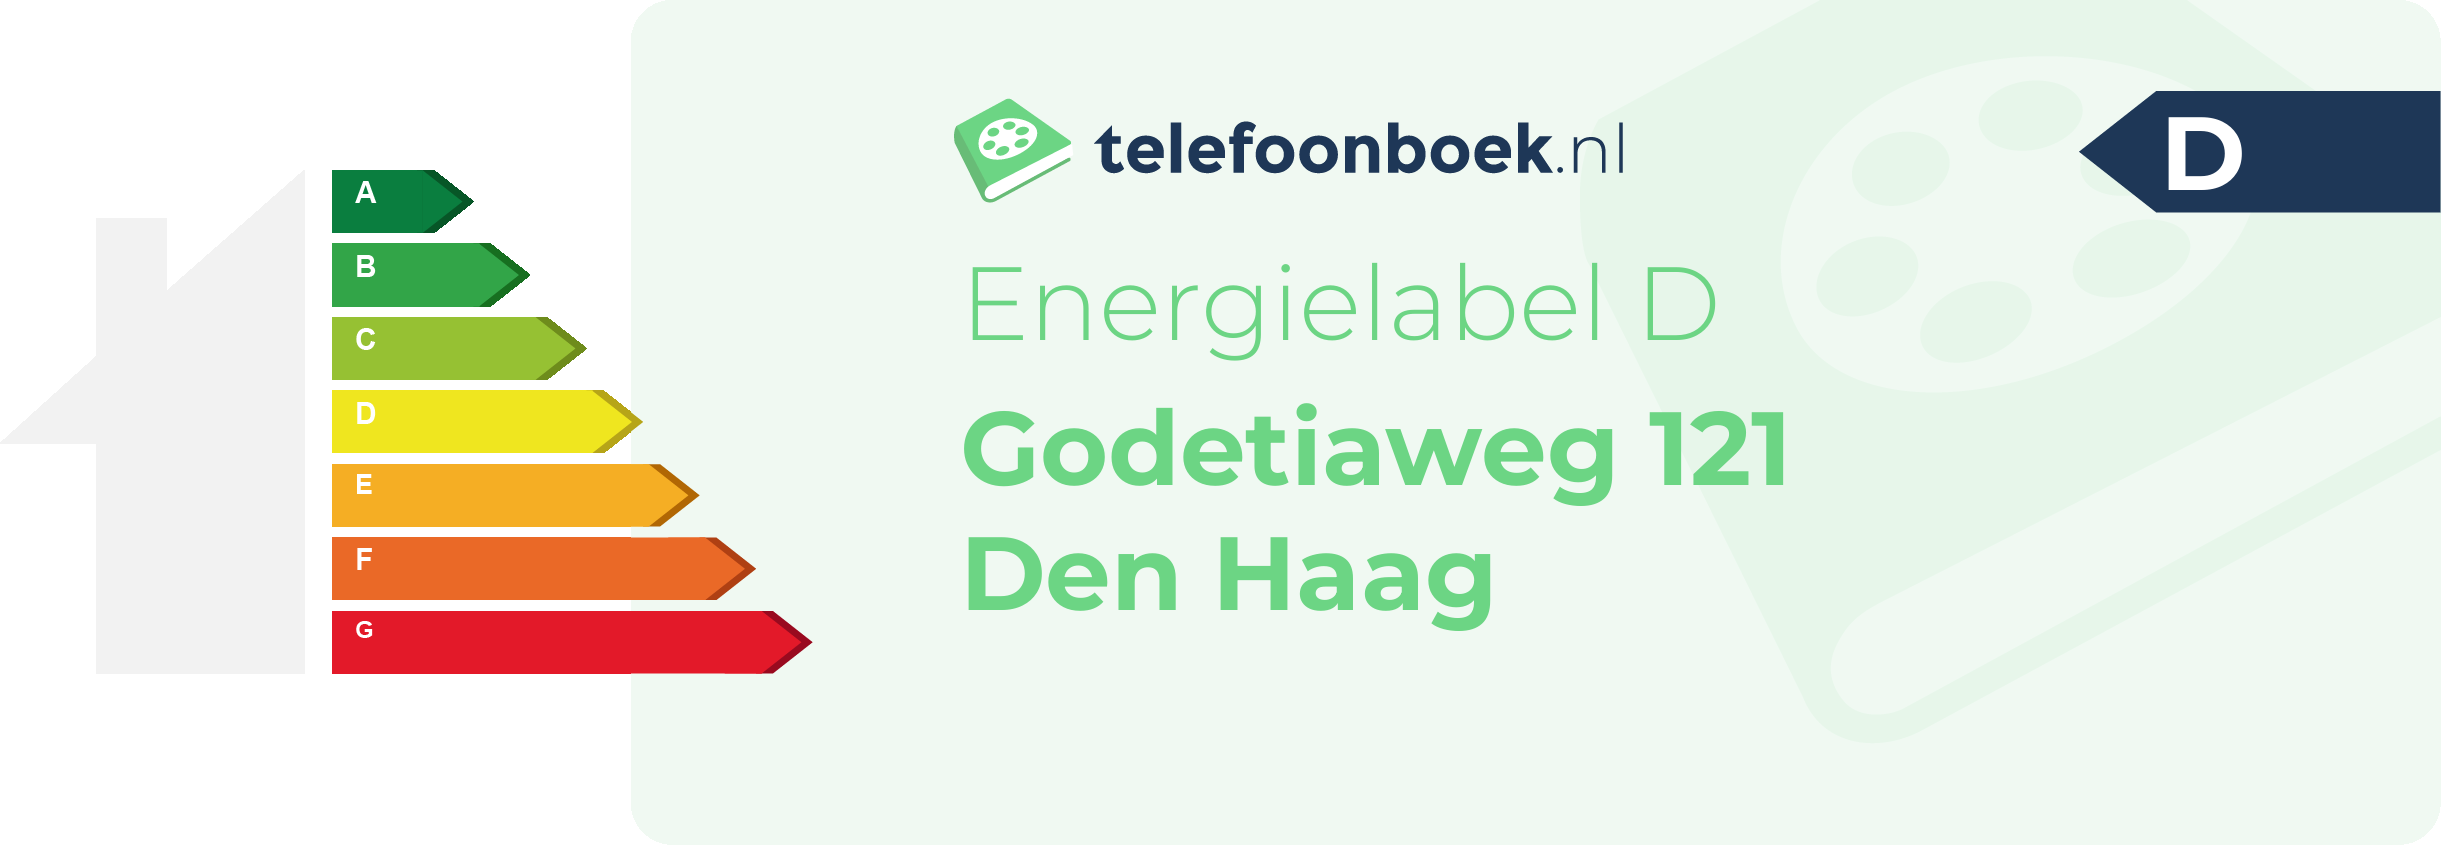 Energielabel Godetiaweg 121 Den Haag